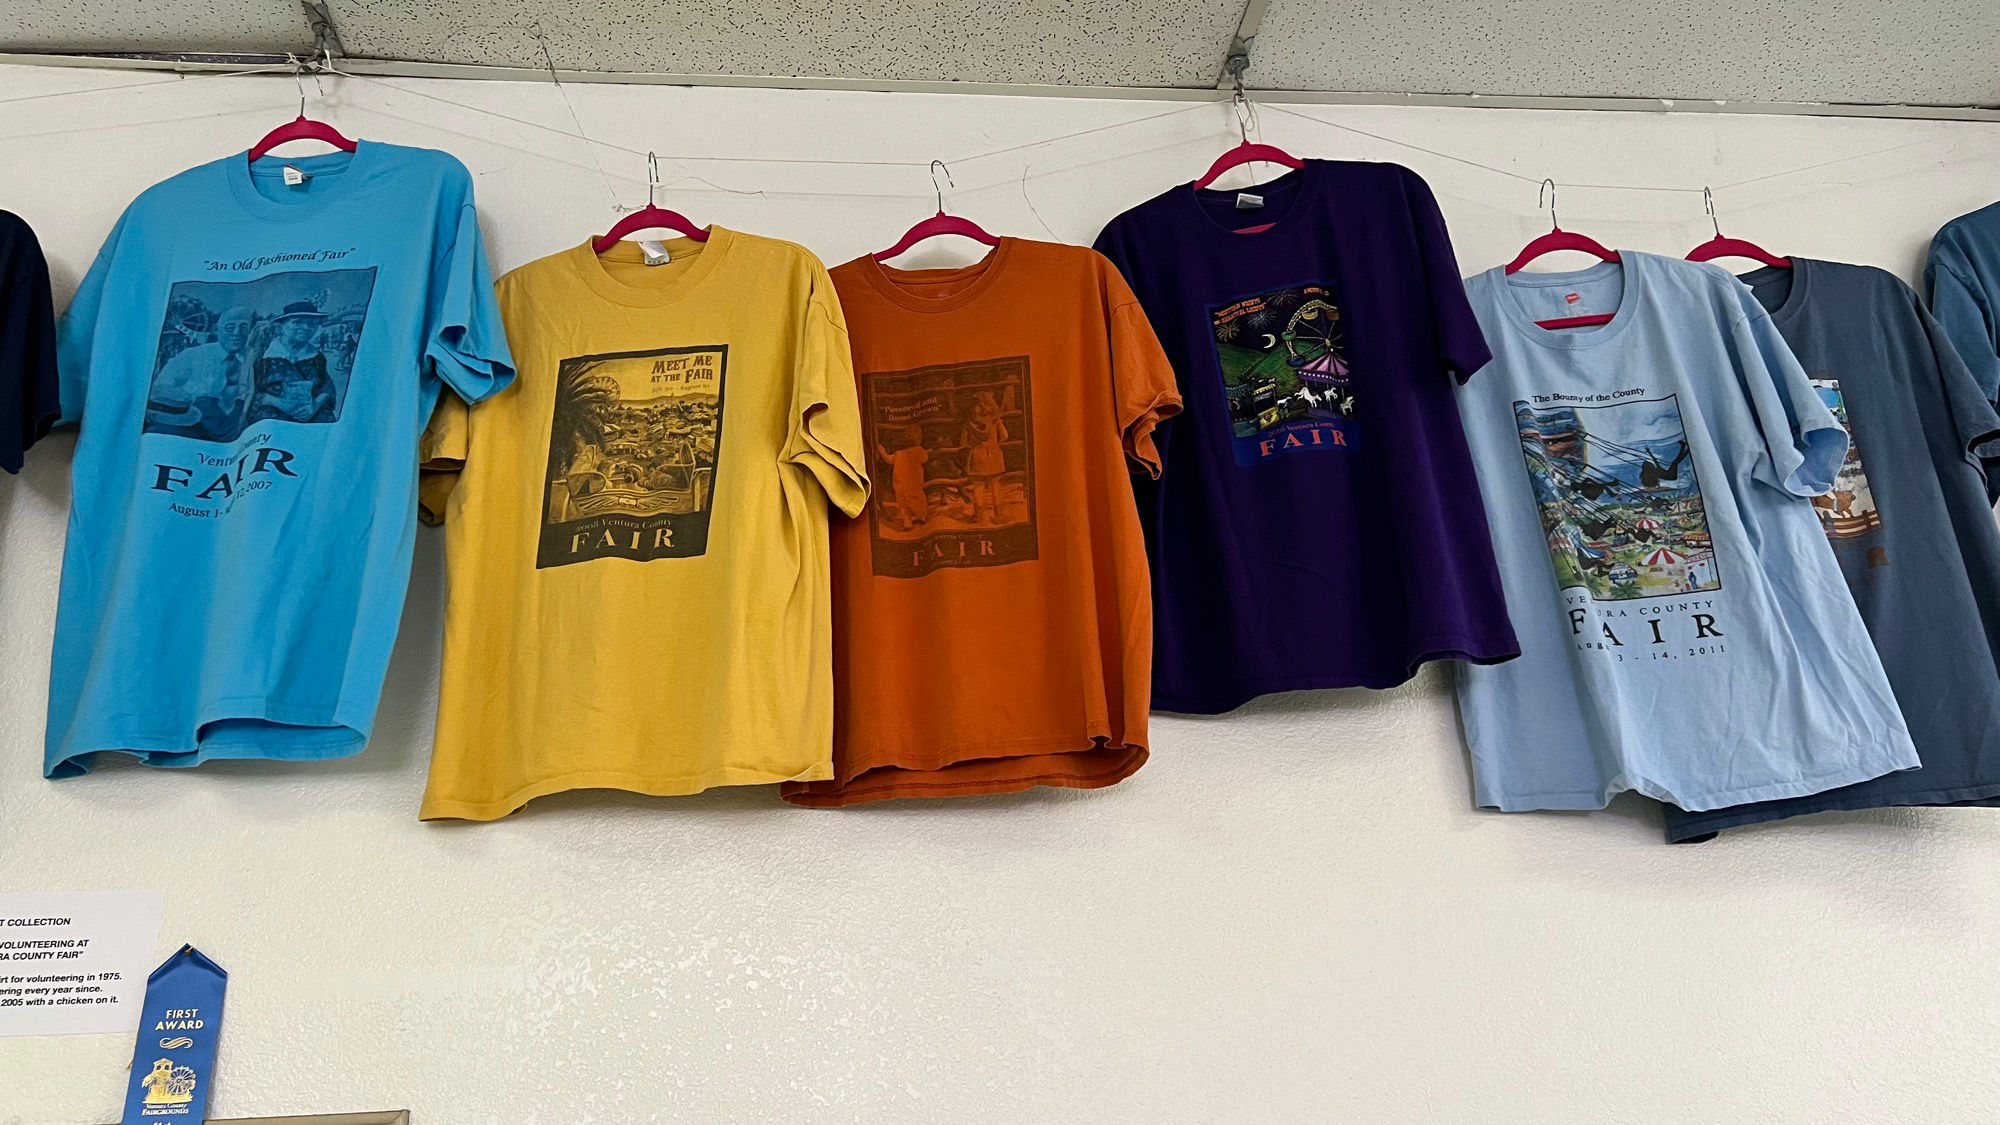 Ventura County Fair T-Shirts 2007 - 2011